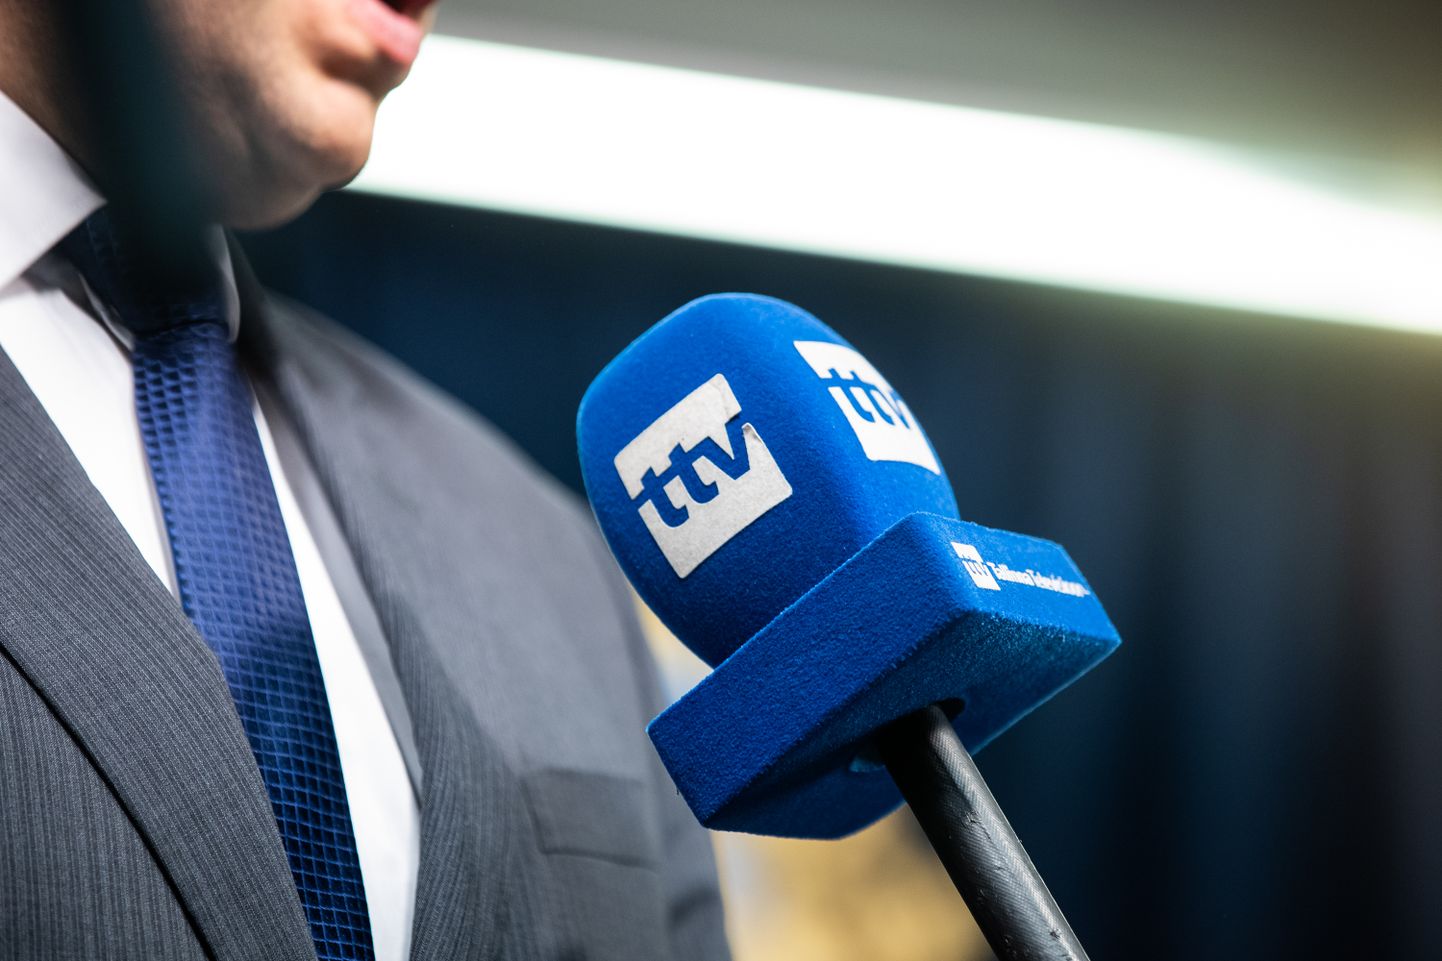 Tallinna Televisiooni (TTV) mikrofon.